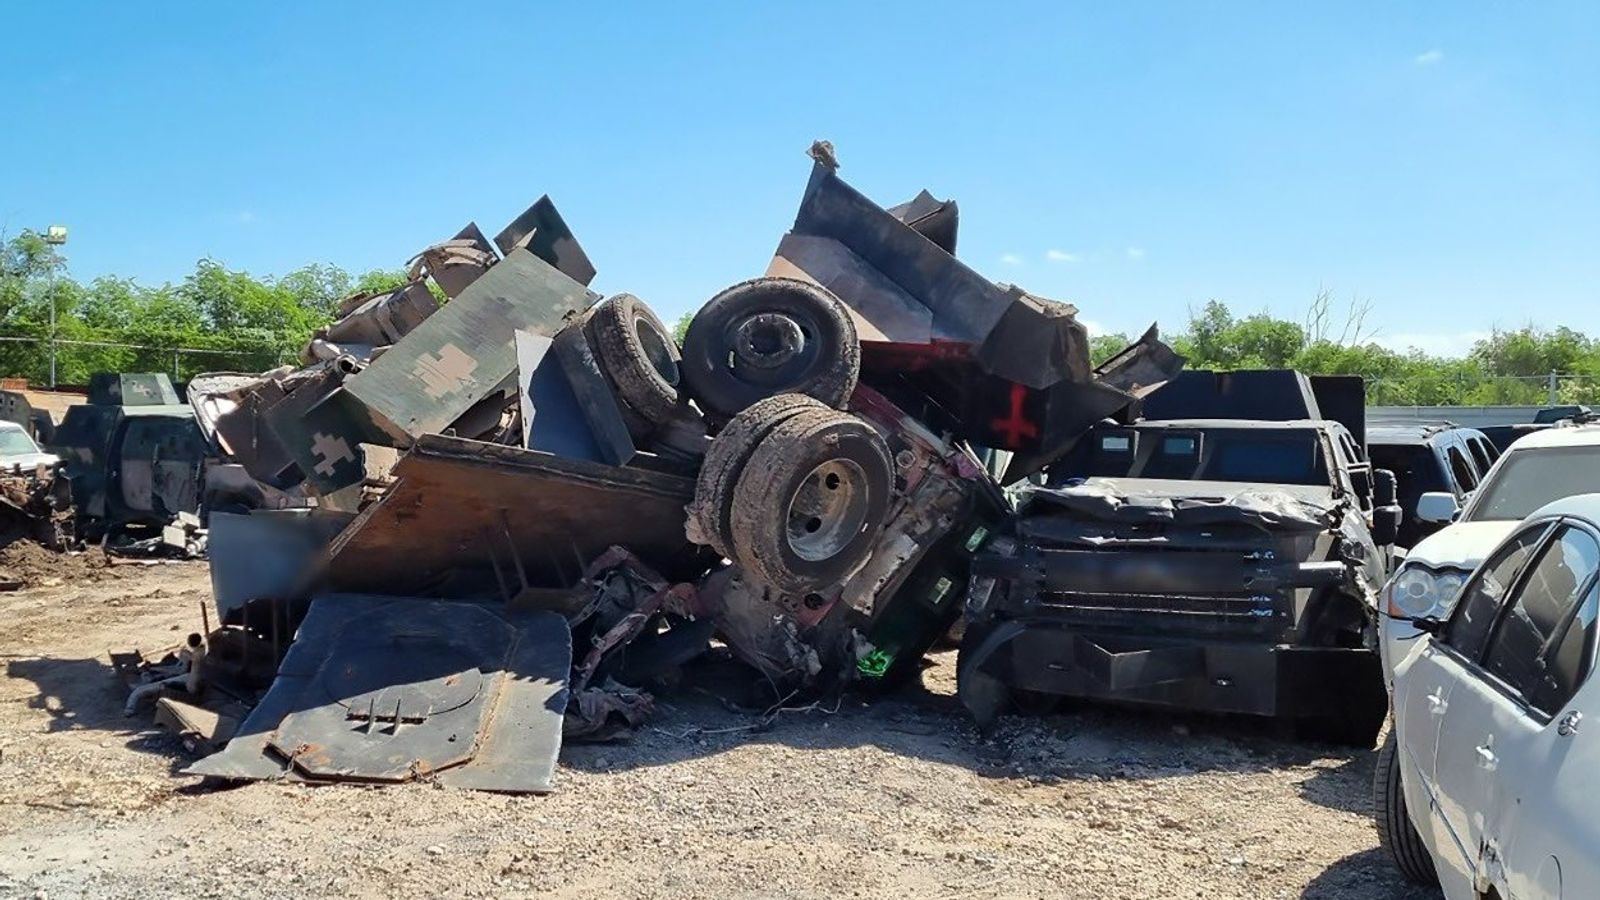 Camiones 'monstruosos' del cartel destruidos por autoridades en México |  Noticias del mundo